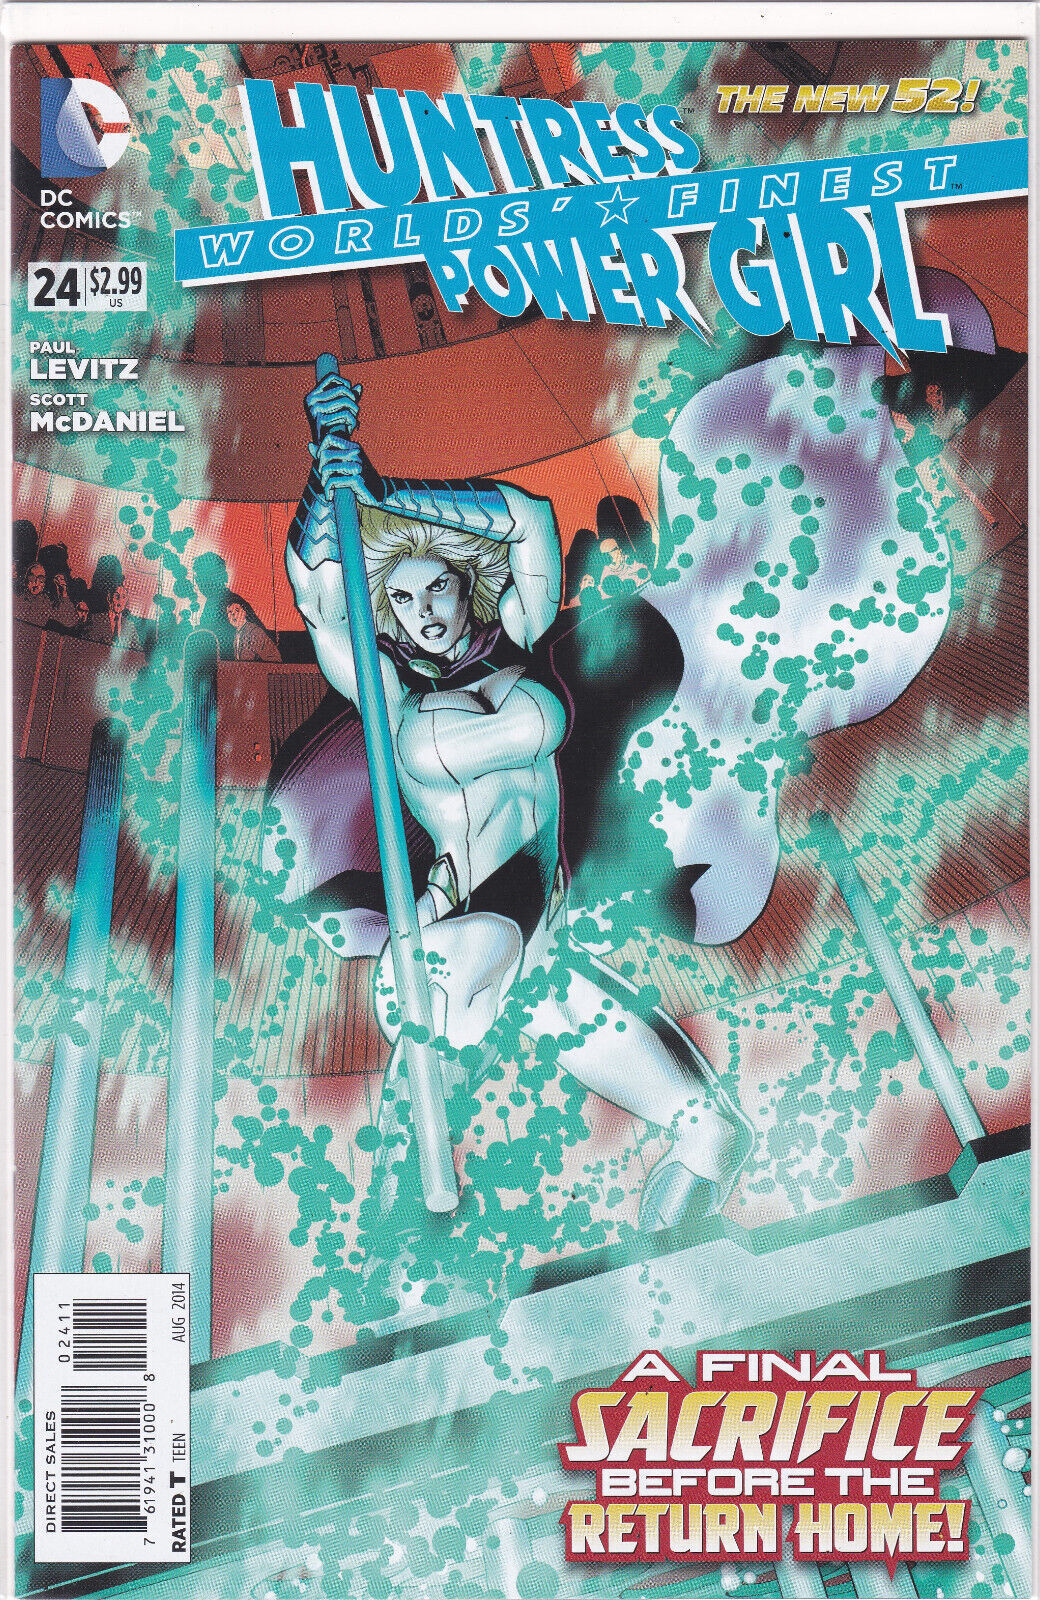 WORLDS FINEST #24, Vol.#3 (2012)DC Comics, High Grade